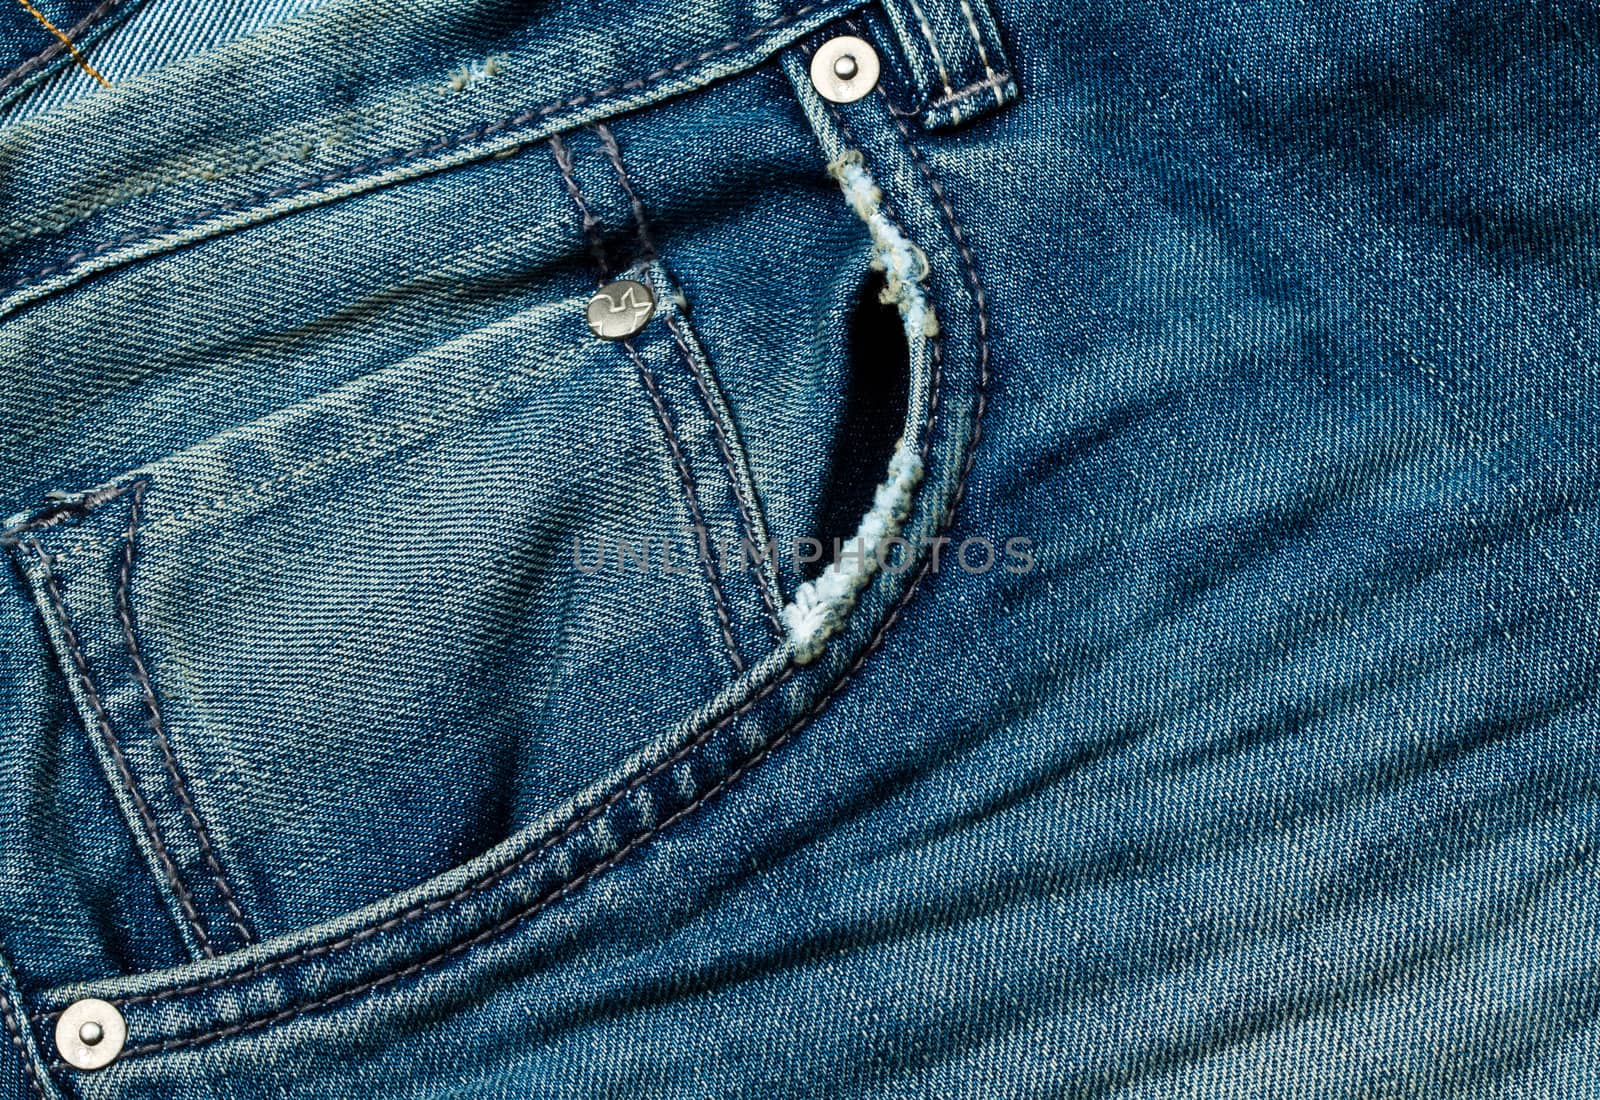 denim blue jeans pocket